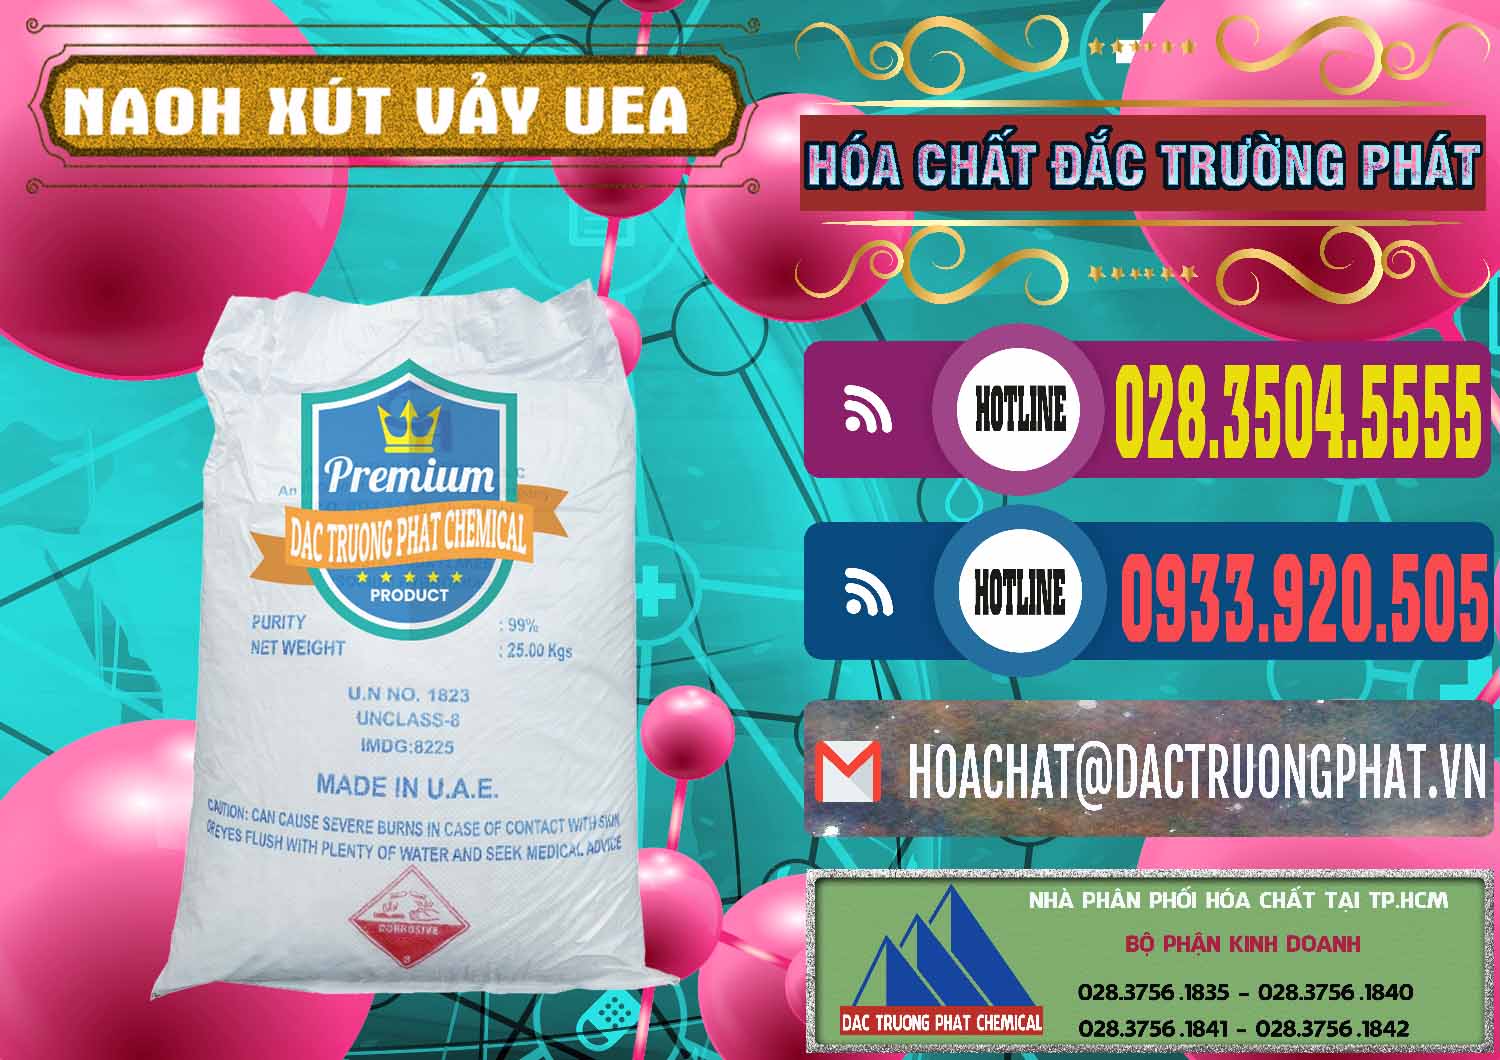 Công ty chuyên bán _ phân phối Xút Vảy - NaOH Vảy UAE Iran - 0432 - Cty phân phối - nhập khẩu hóa chất tại TP.HCM - muabanhoachat.com.vn